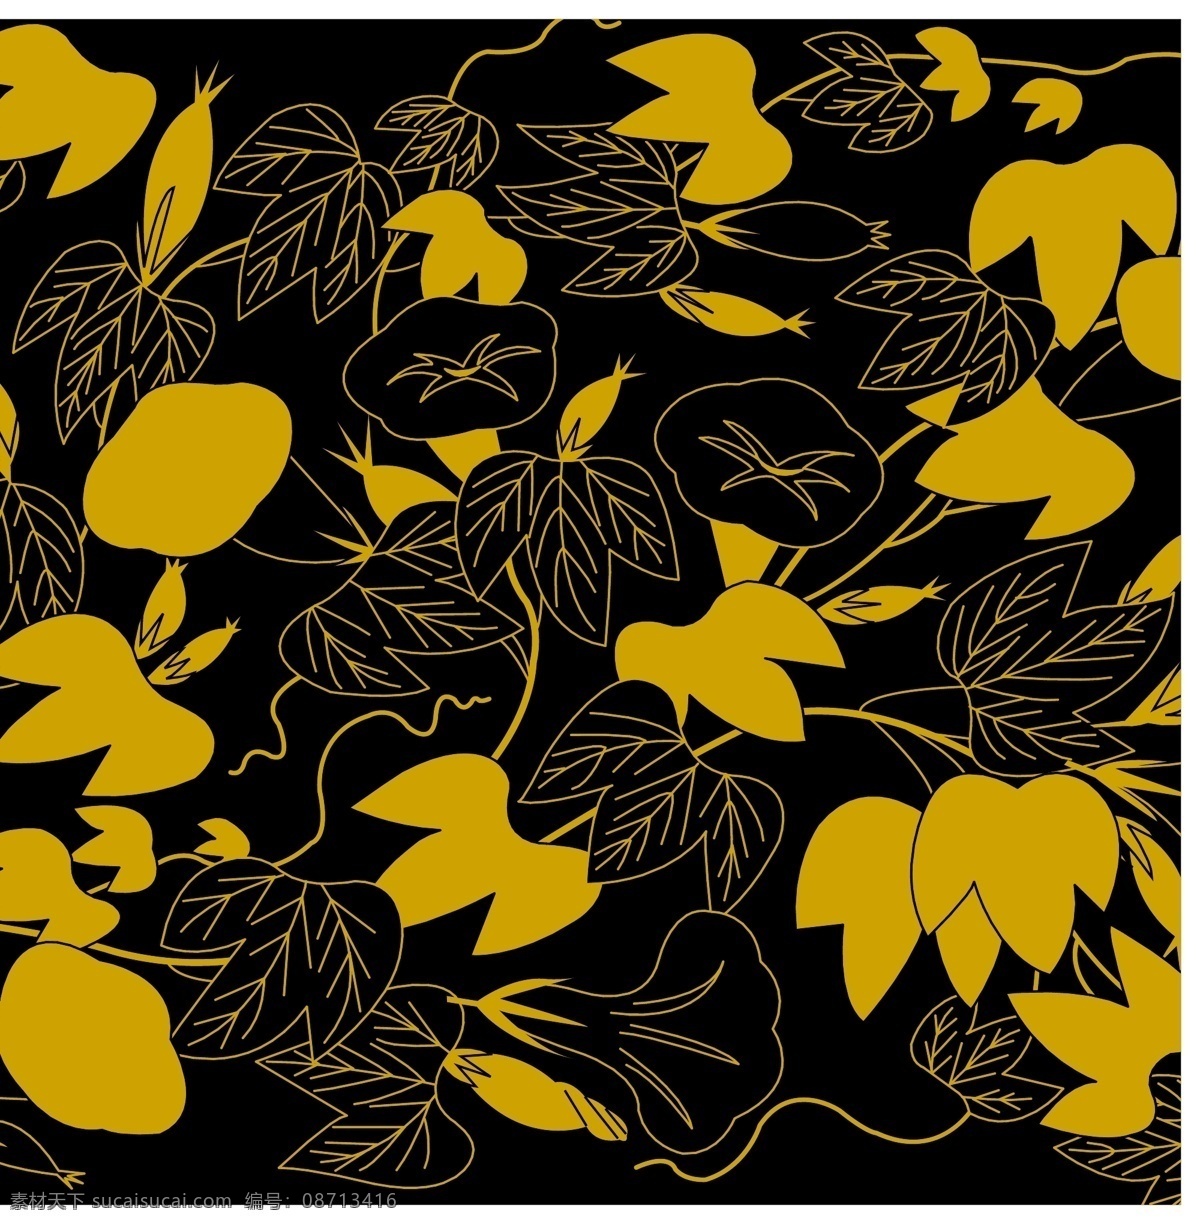 日本 传统 图案 背景 花卉 花纹 模板 设计稿 素材元素 源文件 矢量图